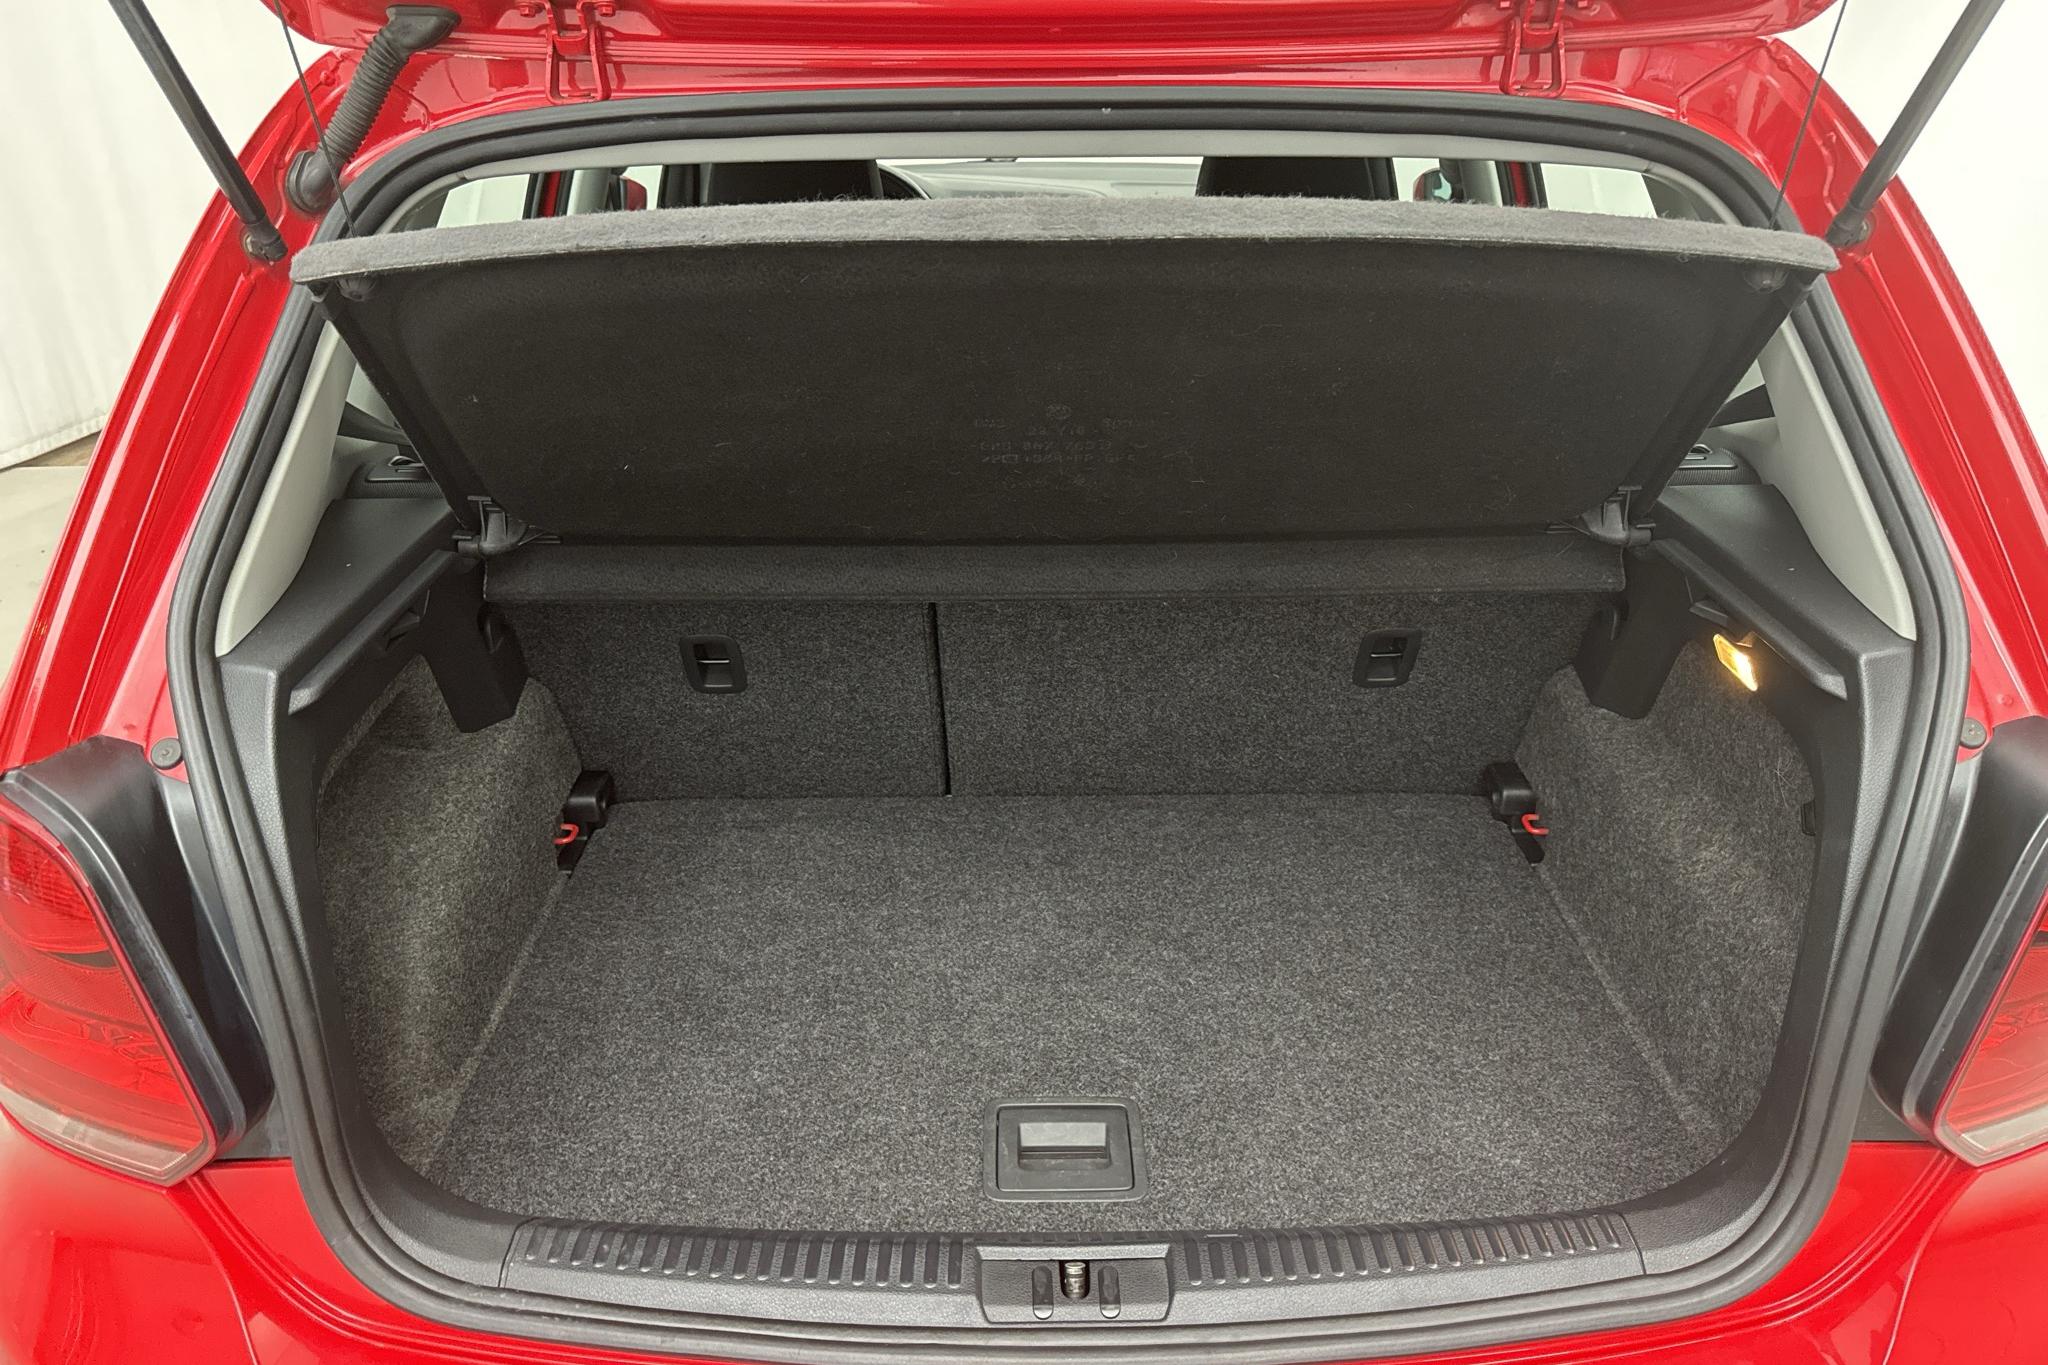 VW Polo 1.4 5dr (85hk) - 94 590 km - Manualna - czerwony - 2011